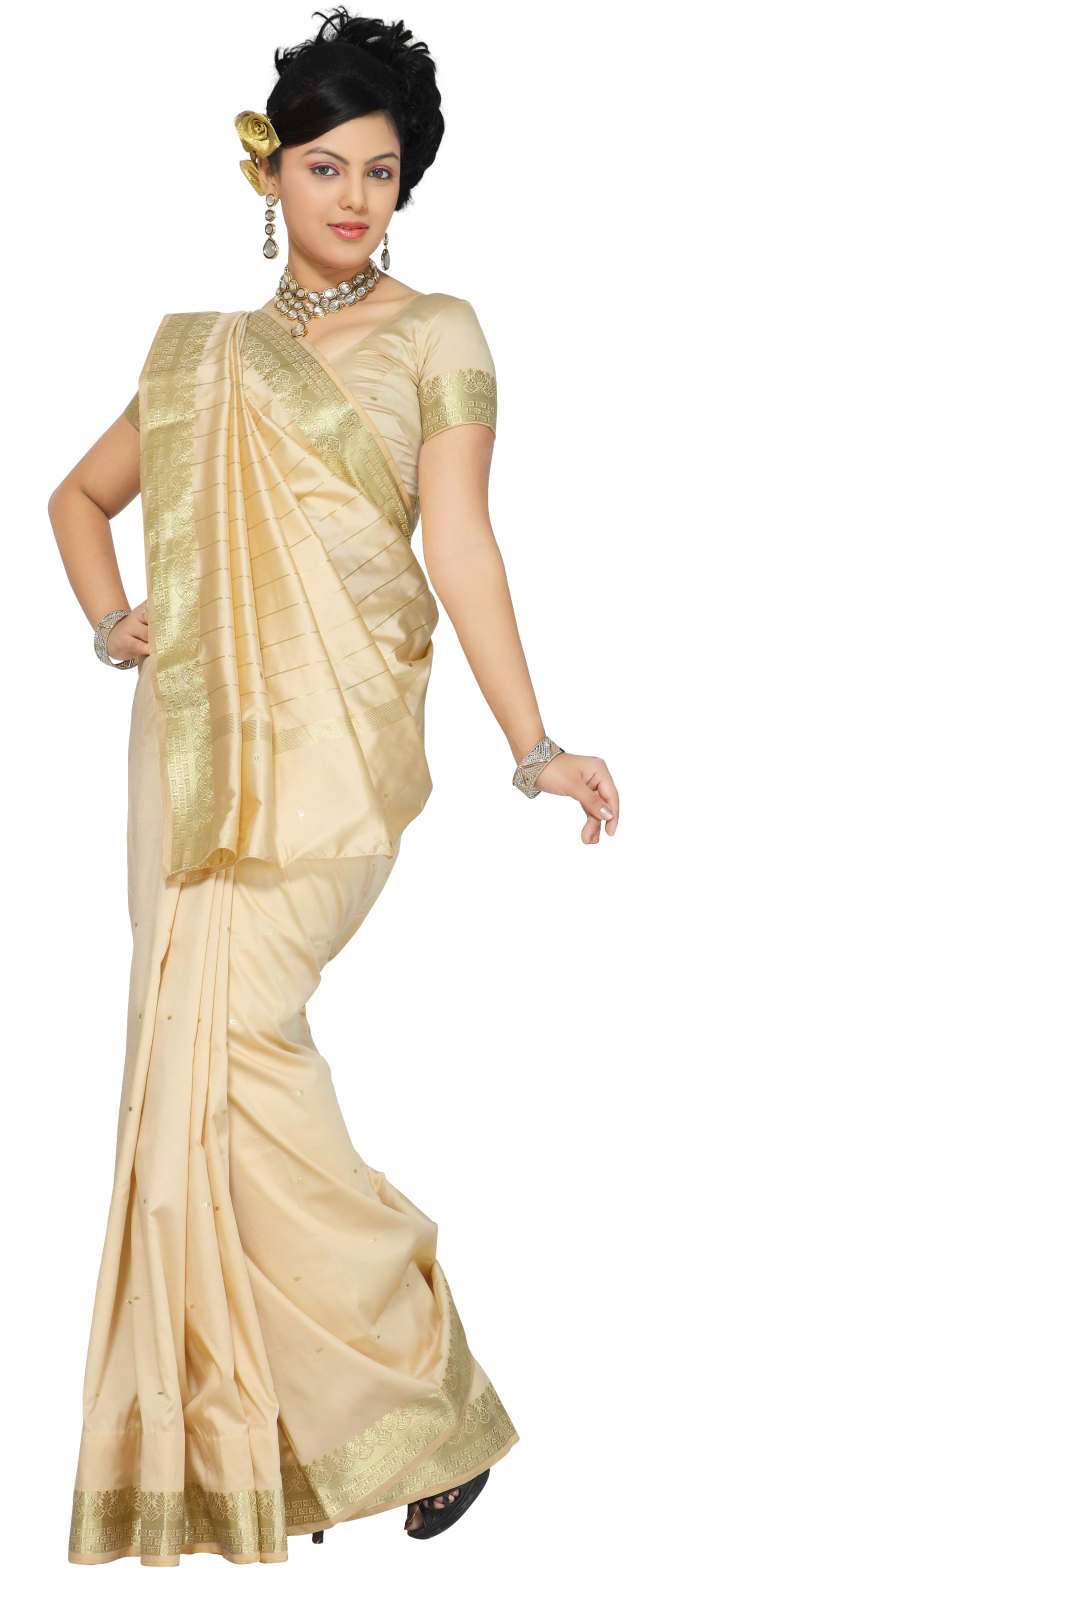 Indian Selections Golden Art Silk Saree Sari fabric India Golden Border